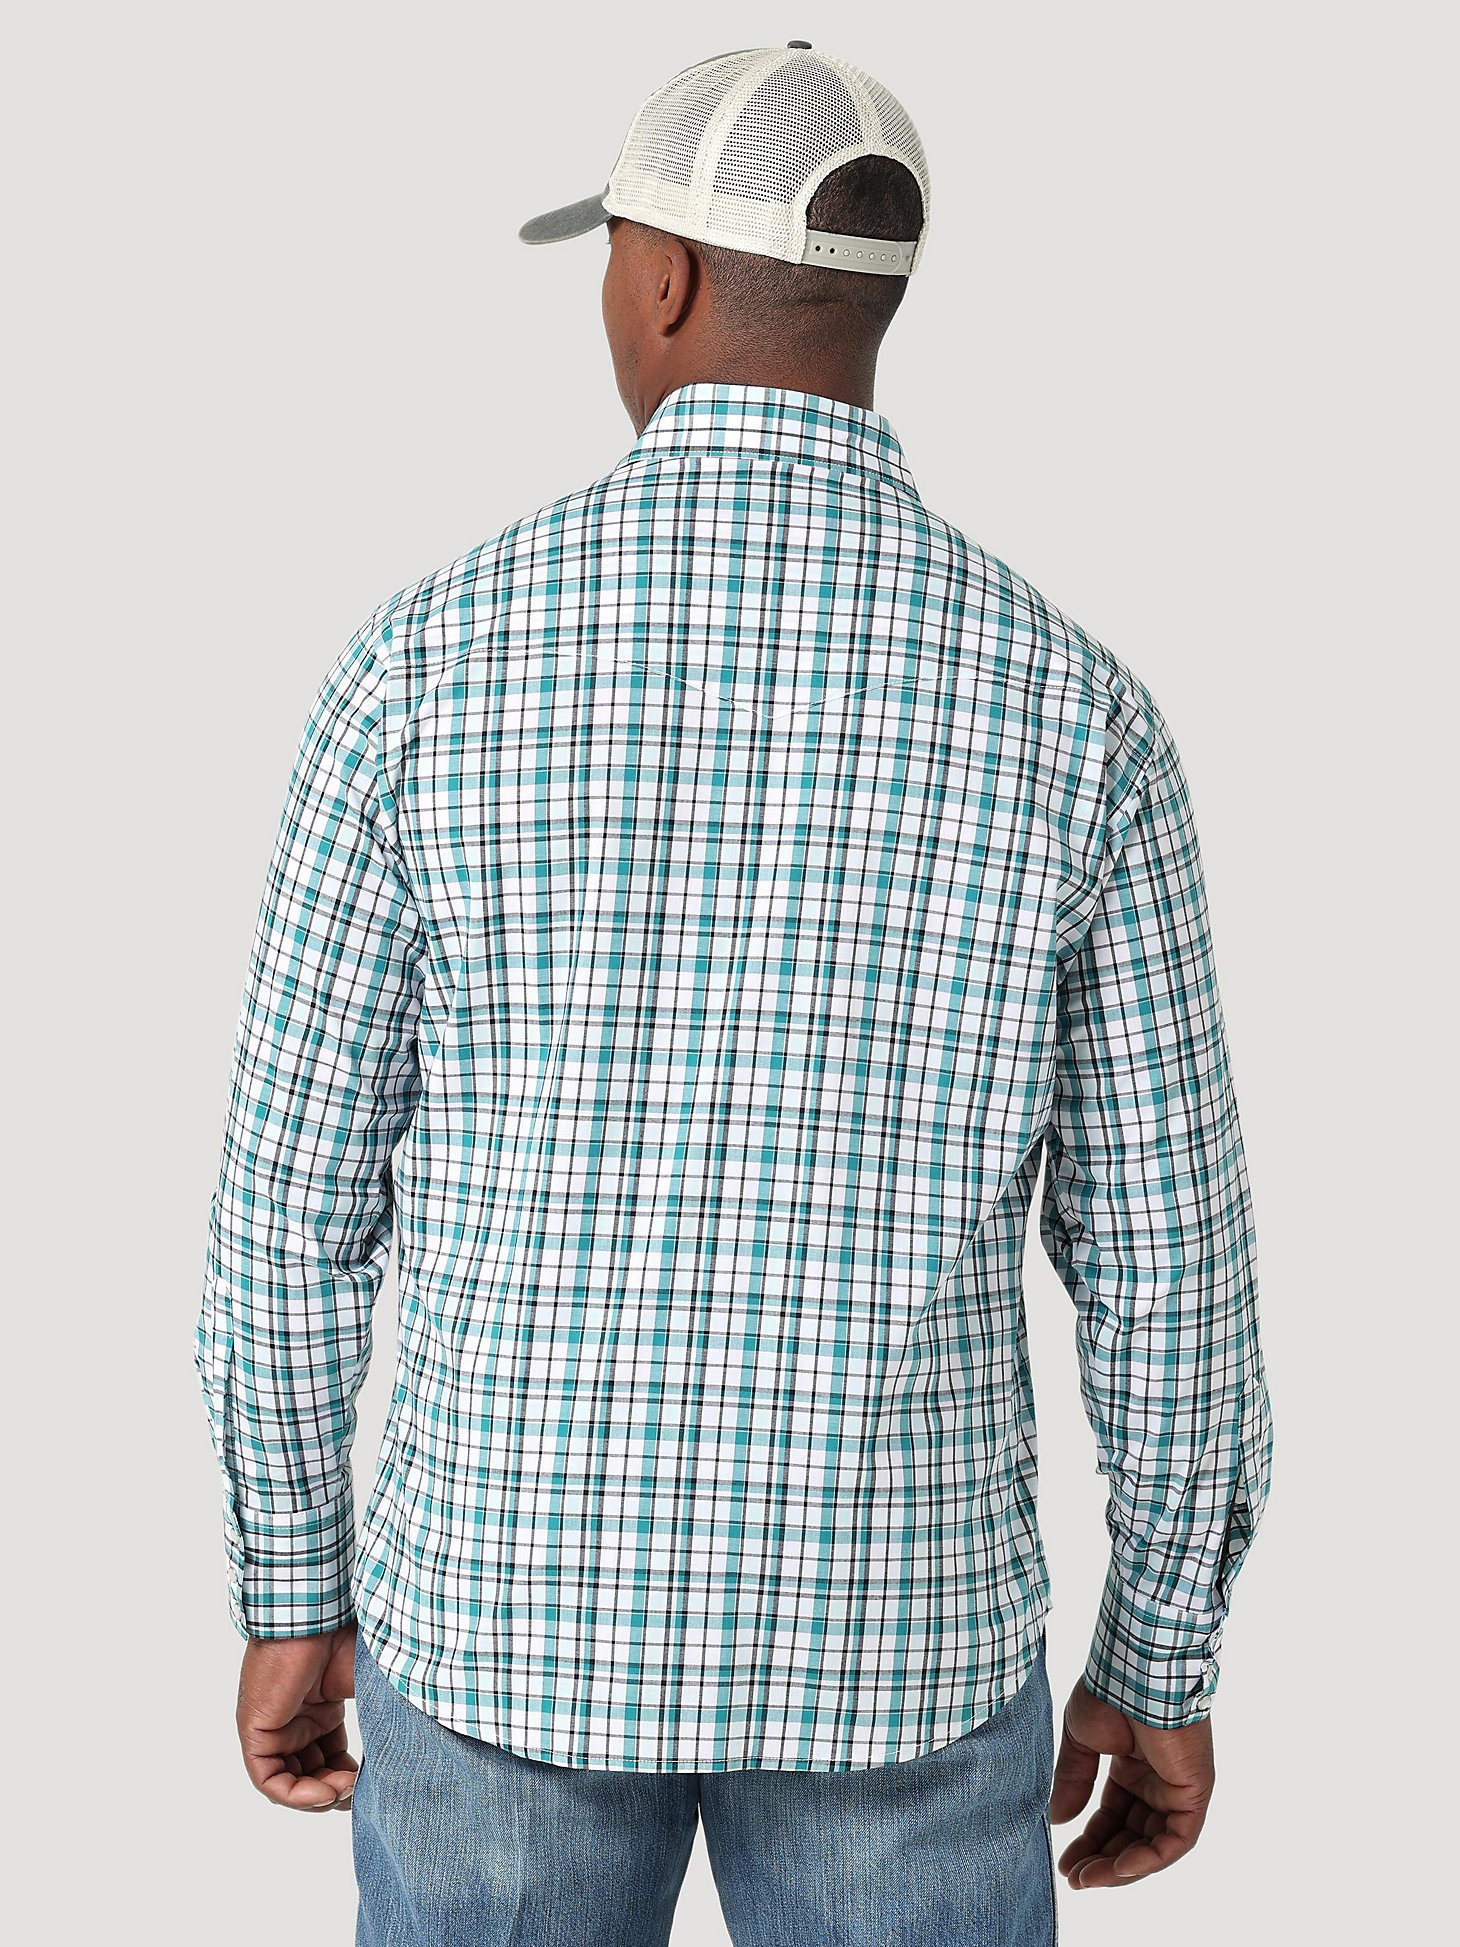 Men's Wrinkle Resist Long Sleeve Western Snap Plaid Shirt in Cyan Mist alternative view 1